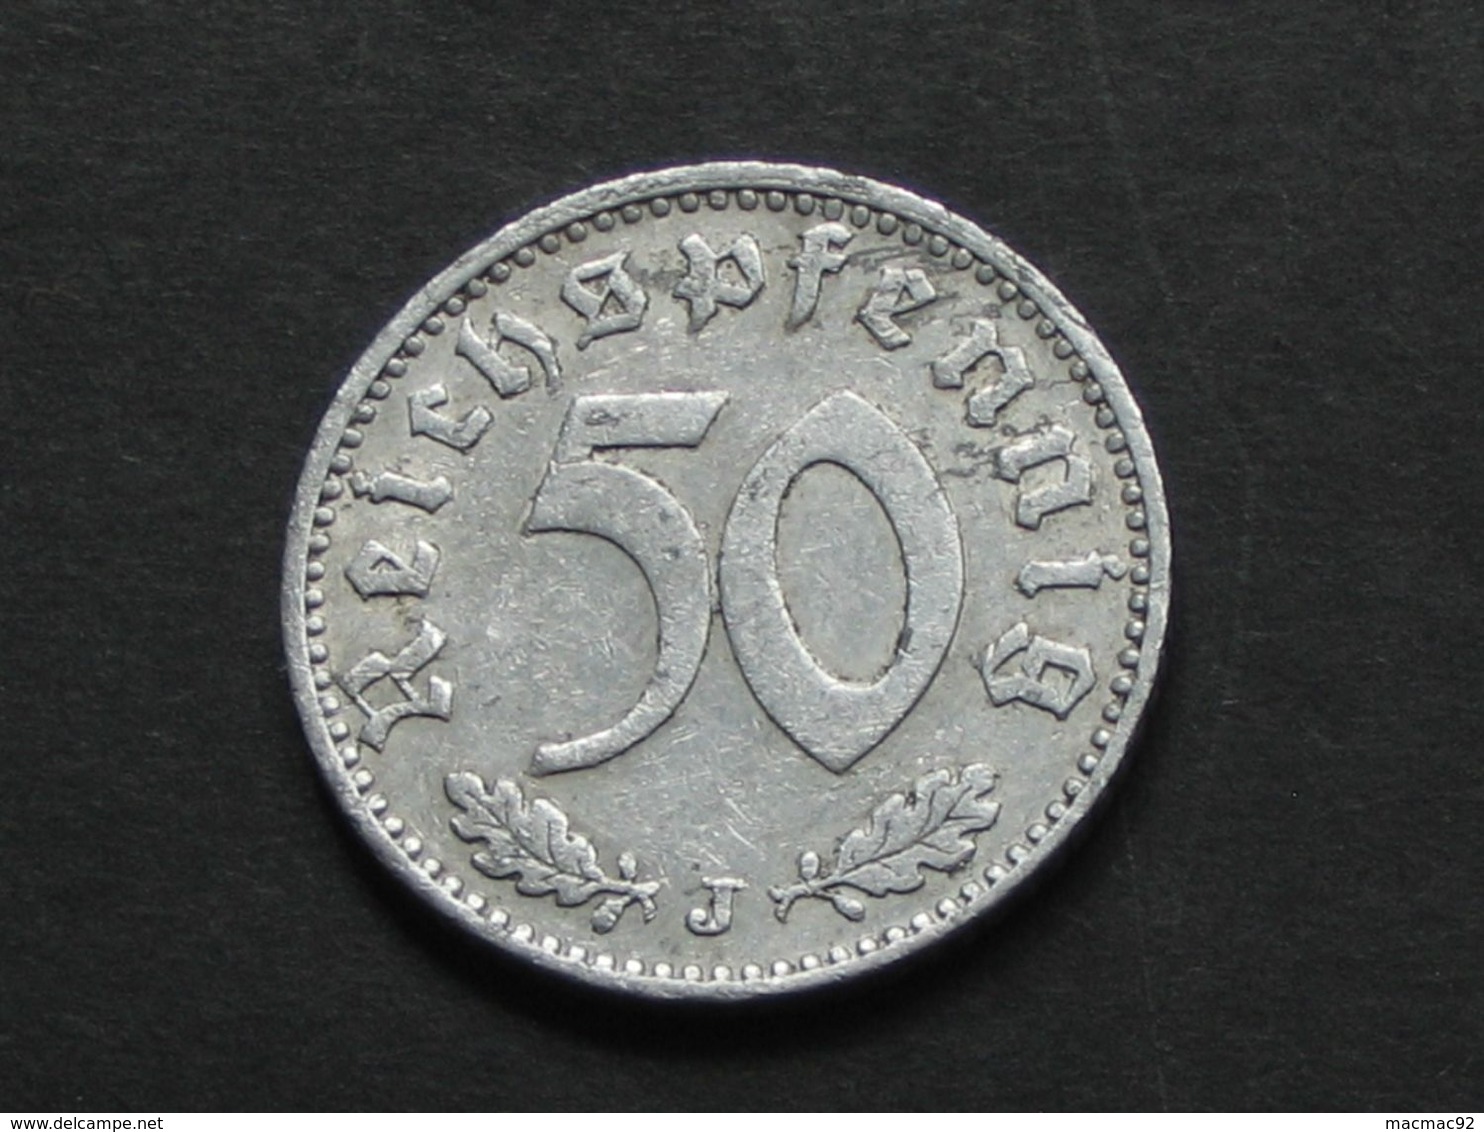 RARE !!  50 Reichspfennig 1940 J  - Germany- Allemagne 3 Eme Reich   **** EN ACHAT IMMEDIAT **** - 50 Reichspfennig